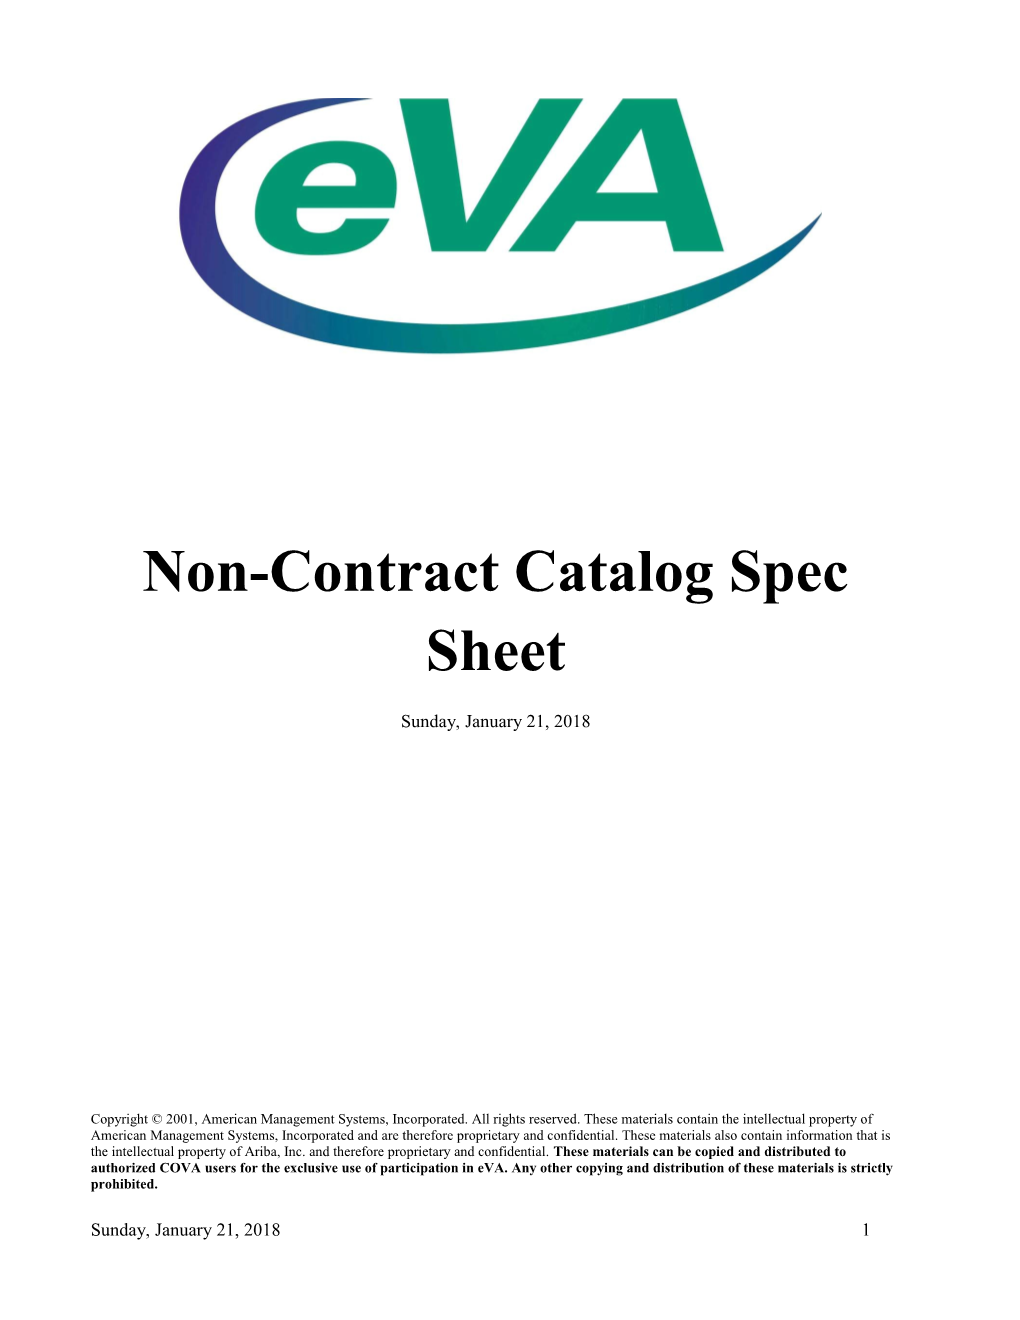 Non-Contract Catalog Spec Sheet